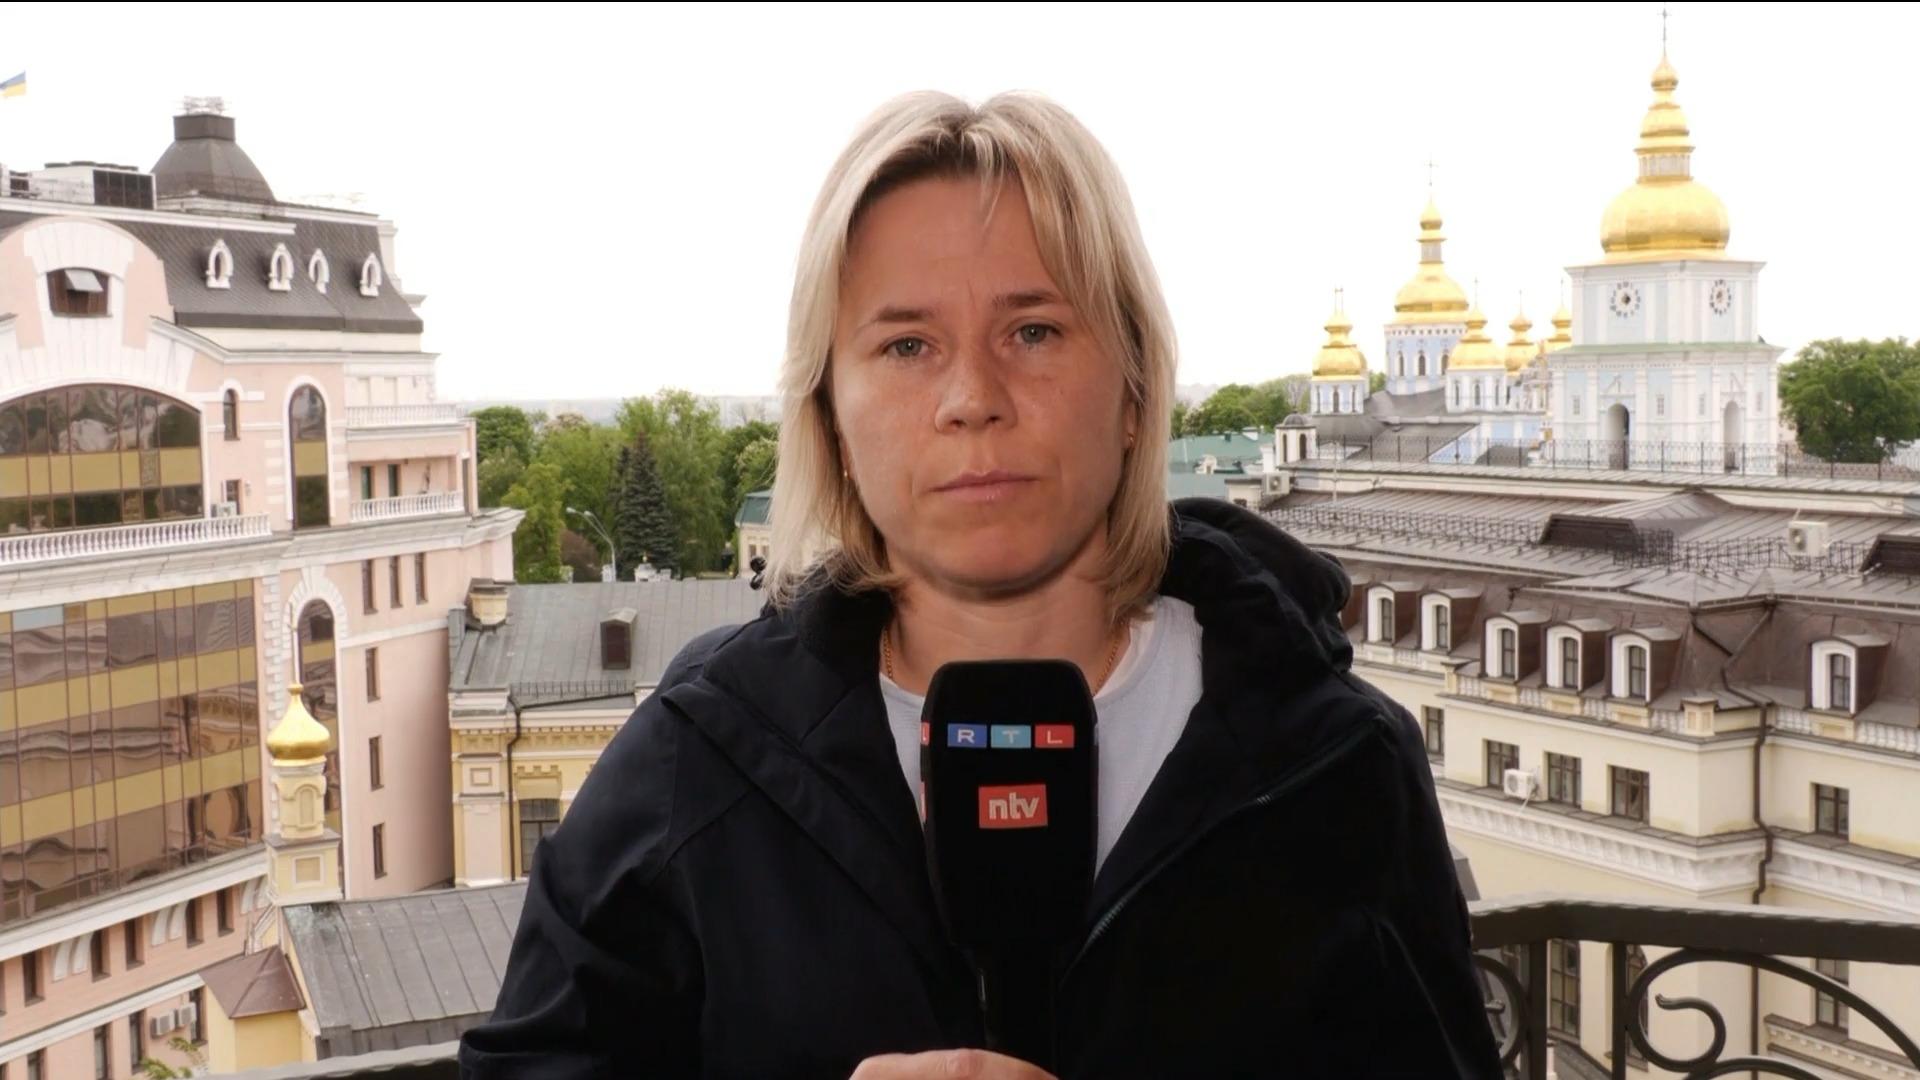 "Geballter Angriff auf Kiew - das ist ungewöhnlich" Callenius zu heftiger Attacke